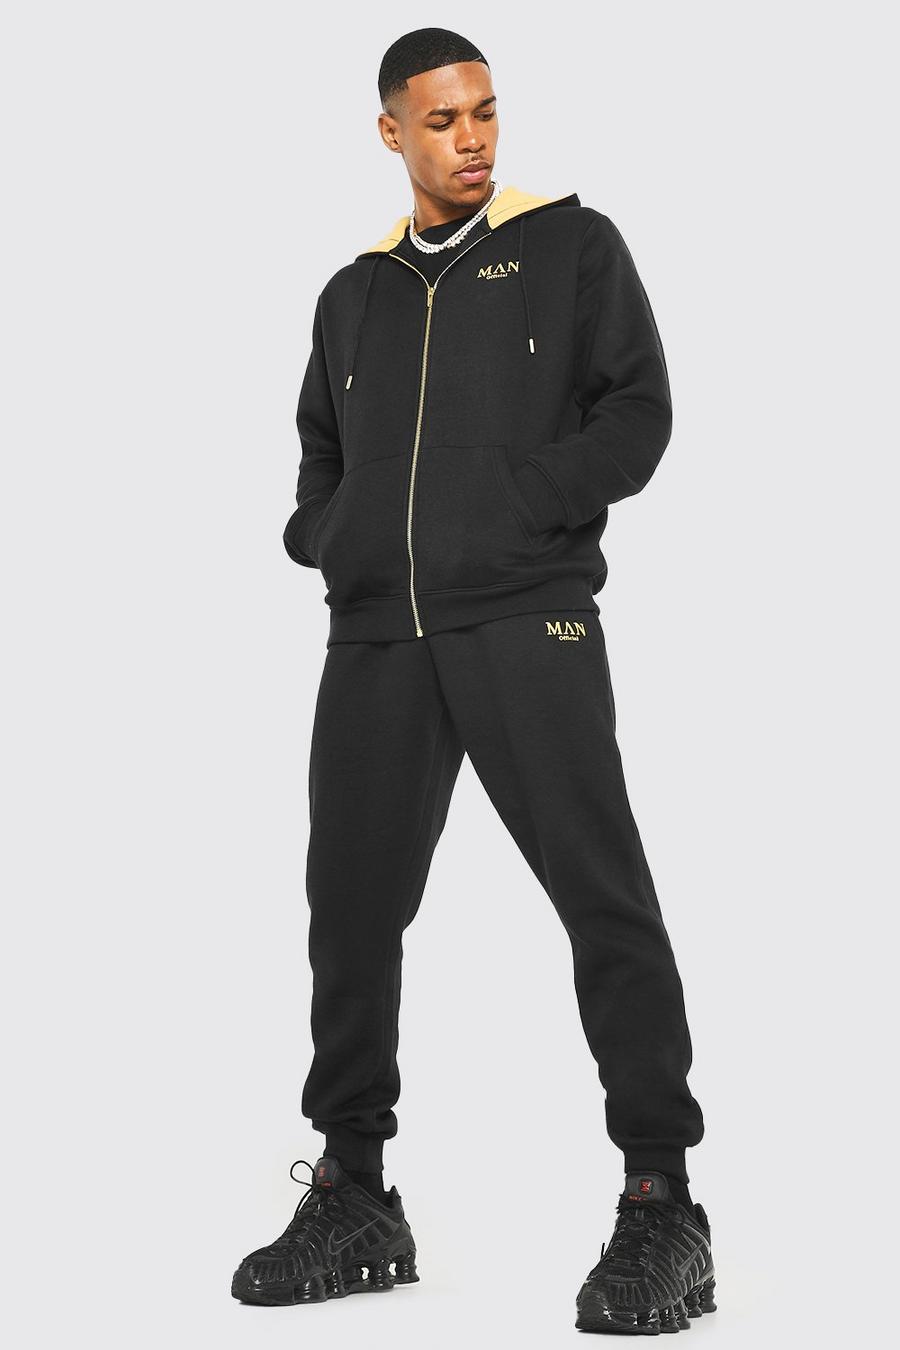 Man Gold Trainingsanzug mit Kapuze und Reißverschluss, Black schwarz image number 1